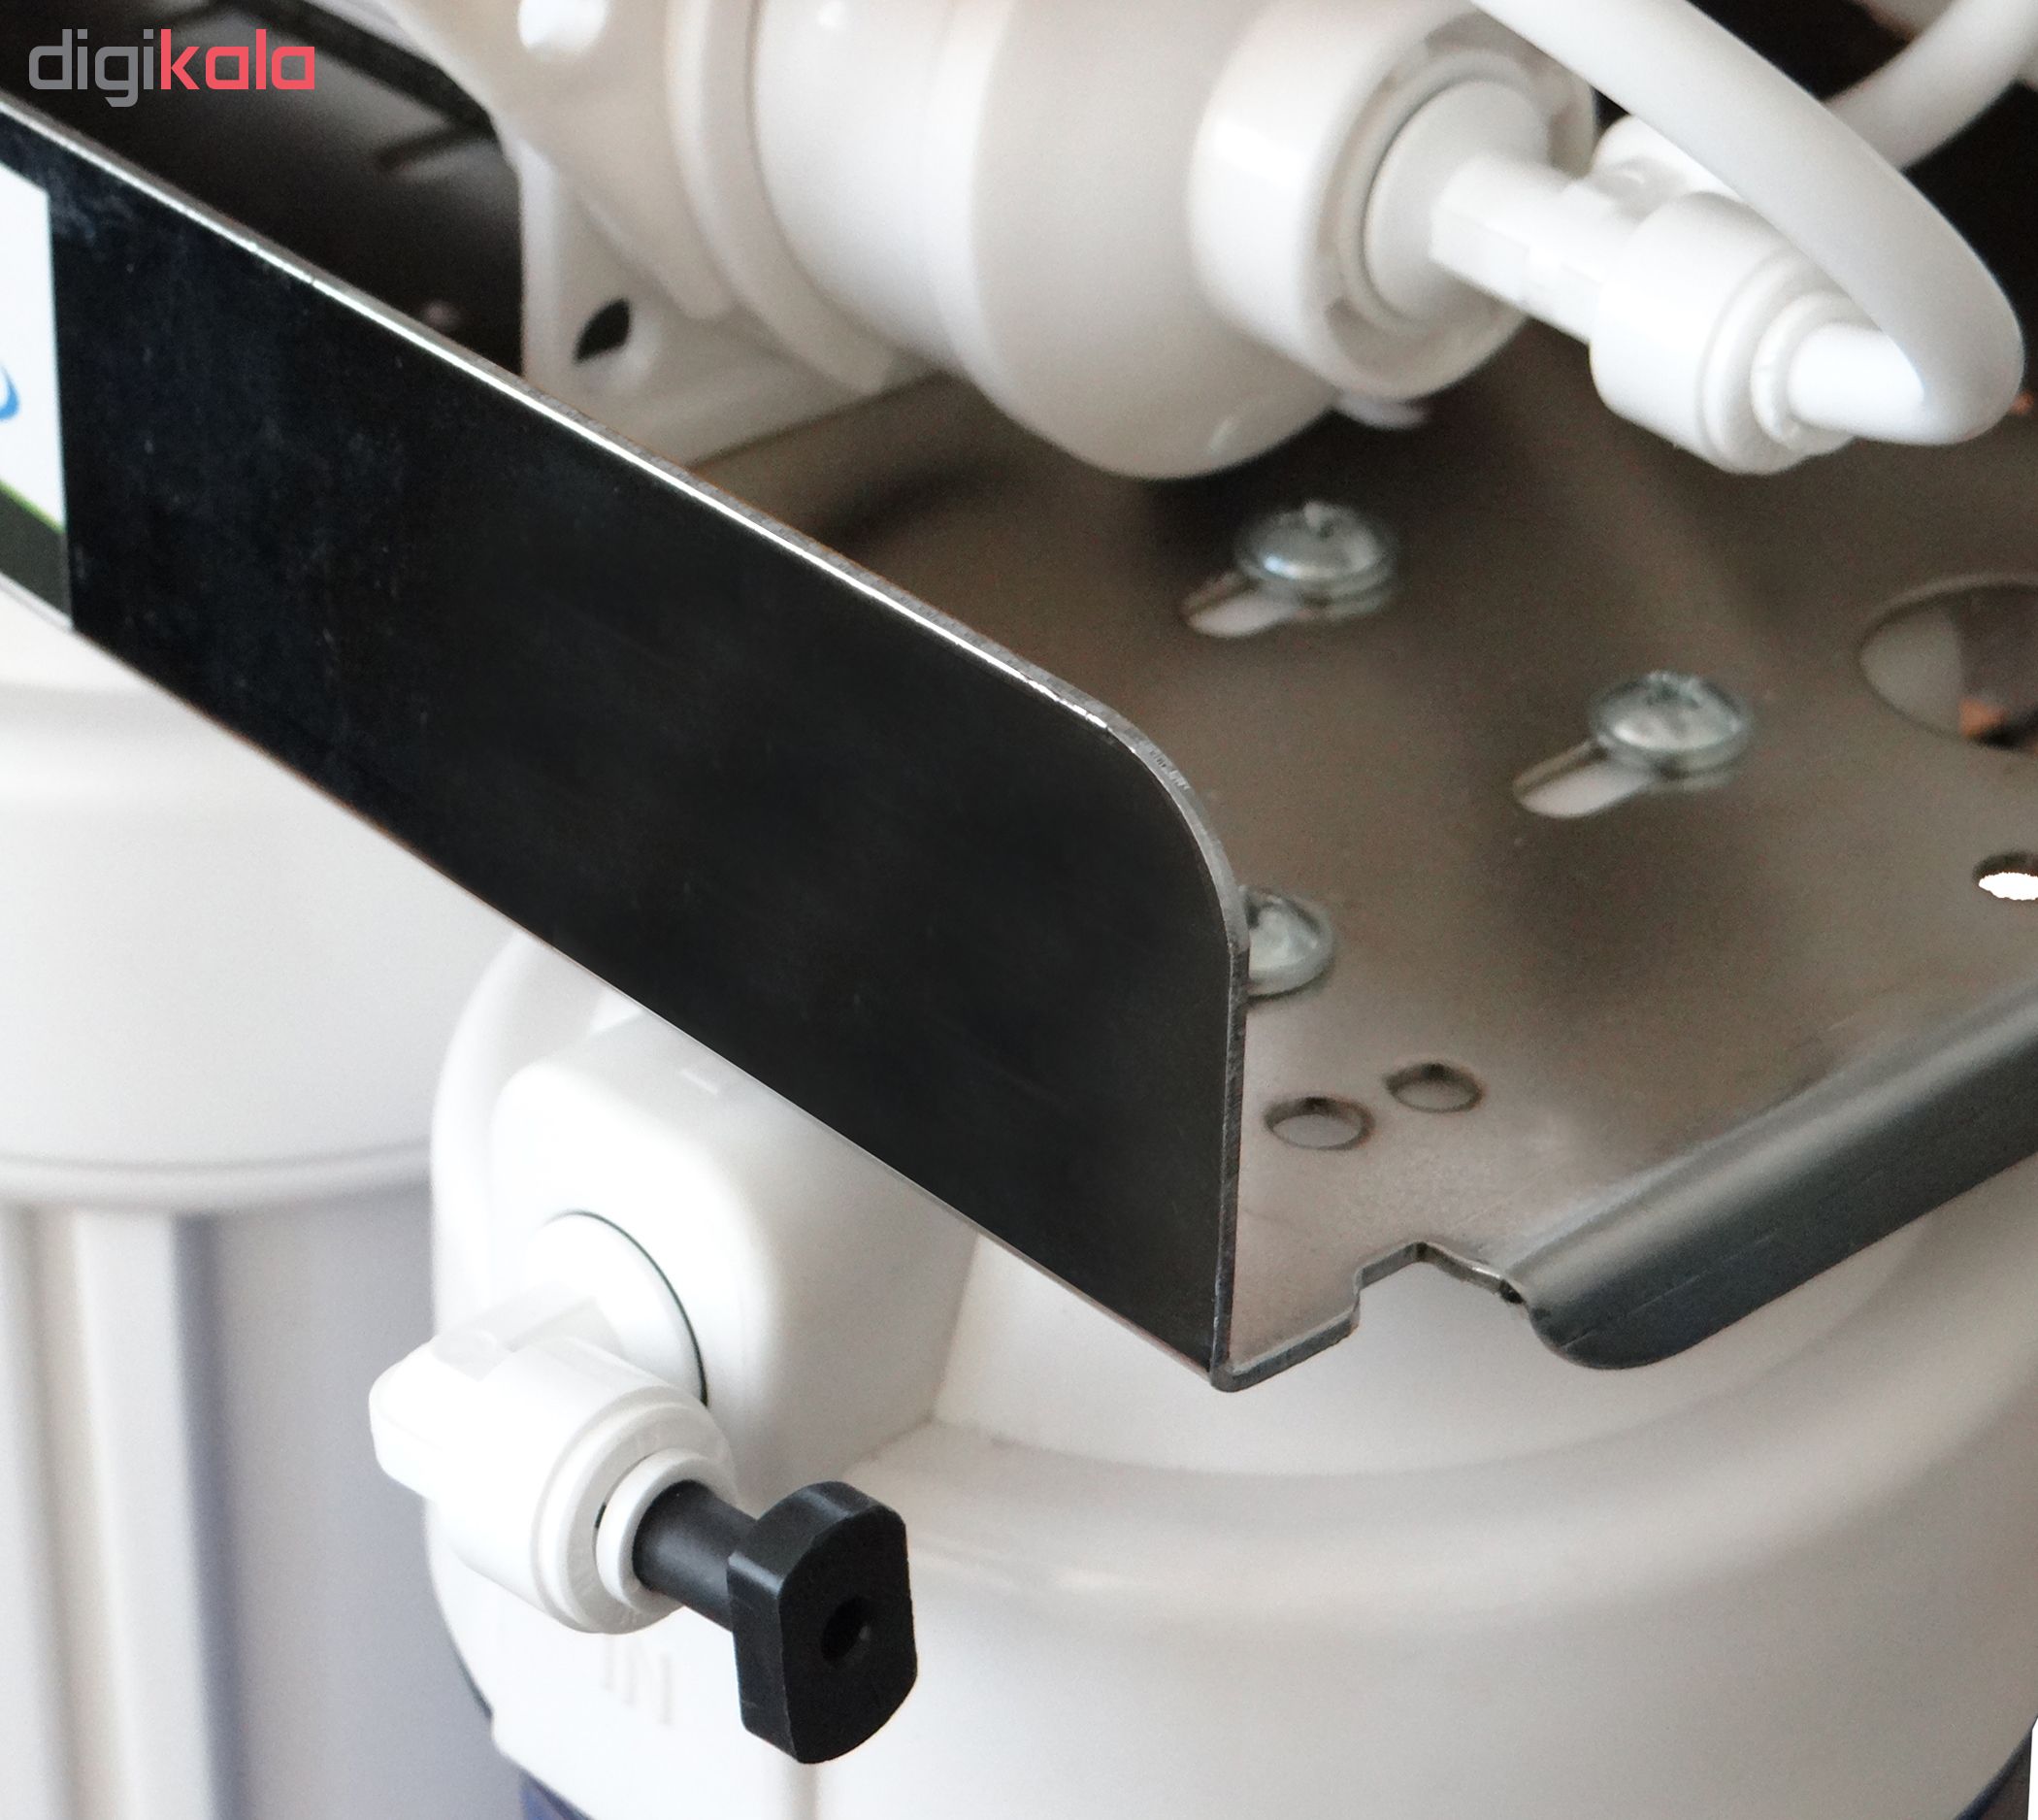 دستگاه تصفیه کننده آب آکوآ اسپرینگ مدل CHROME-S9